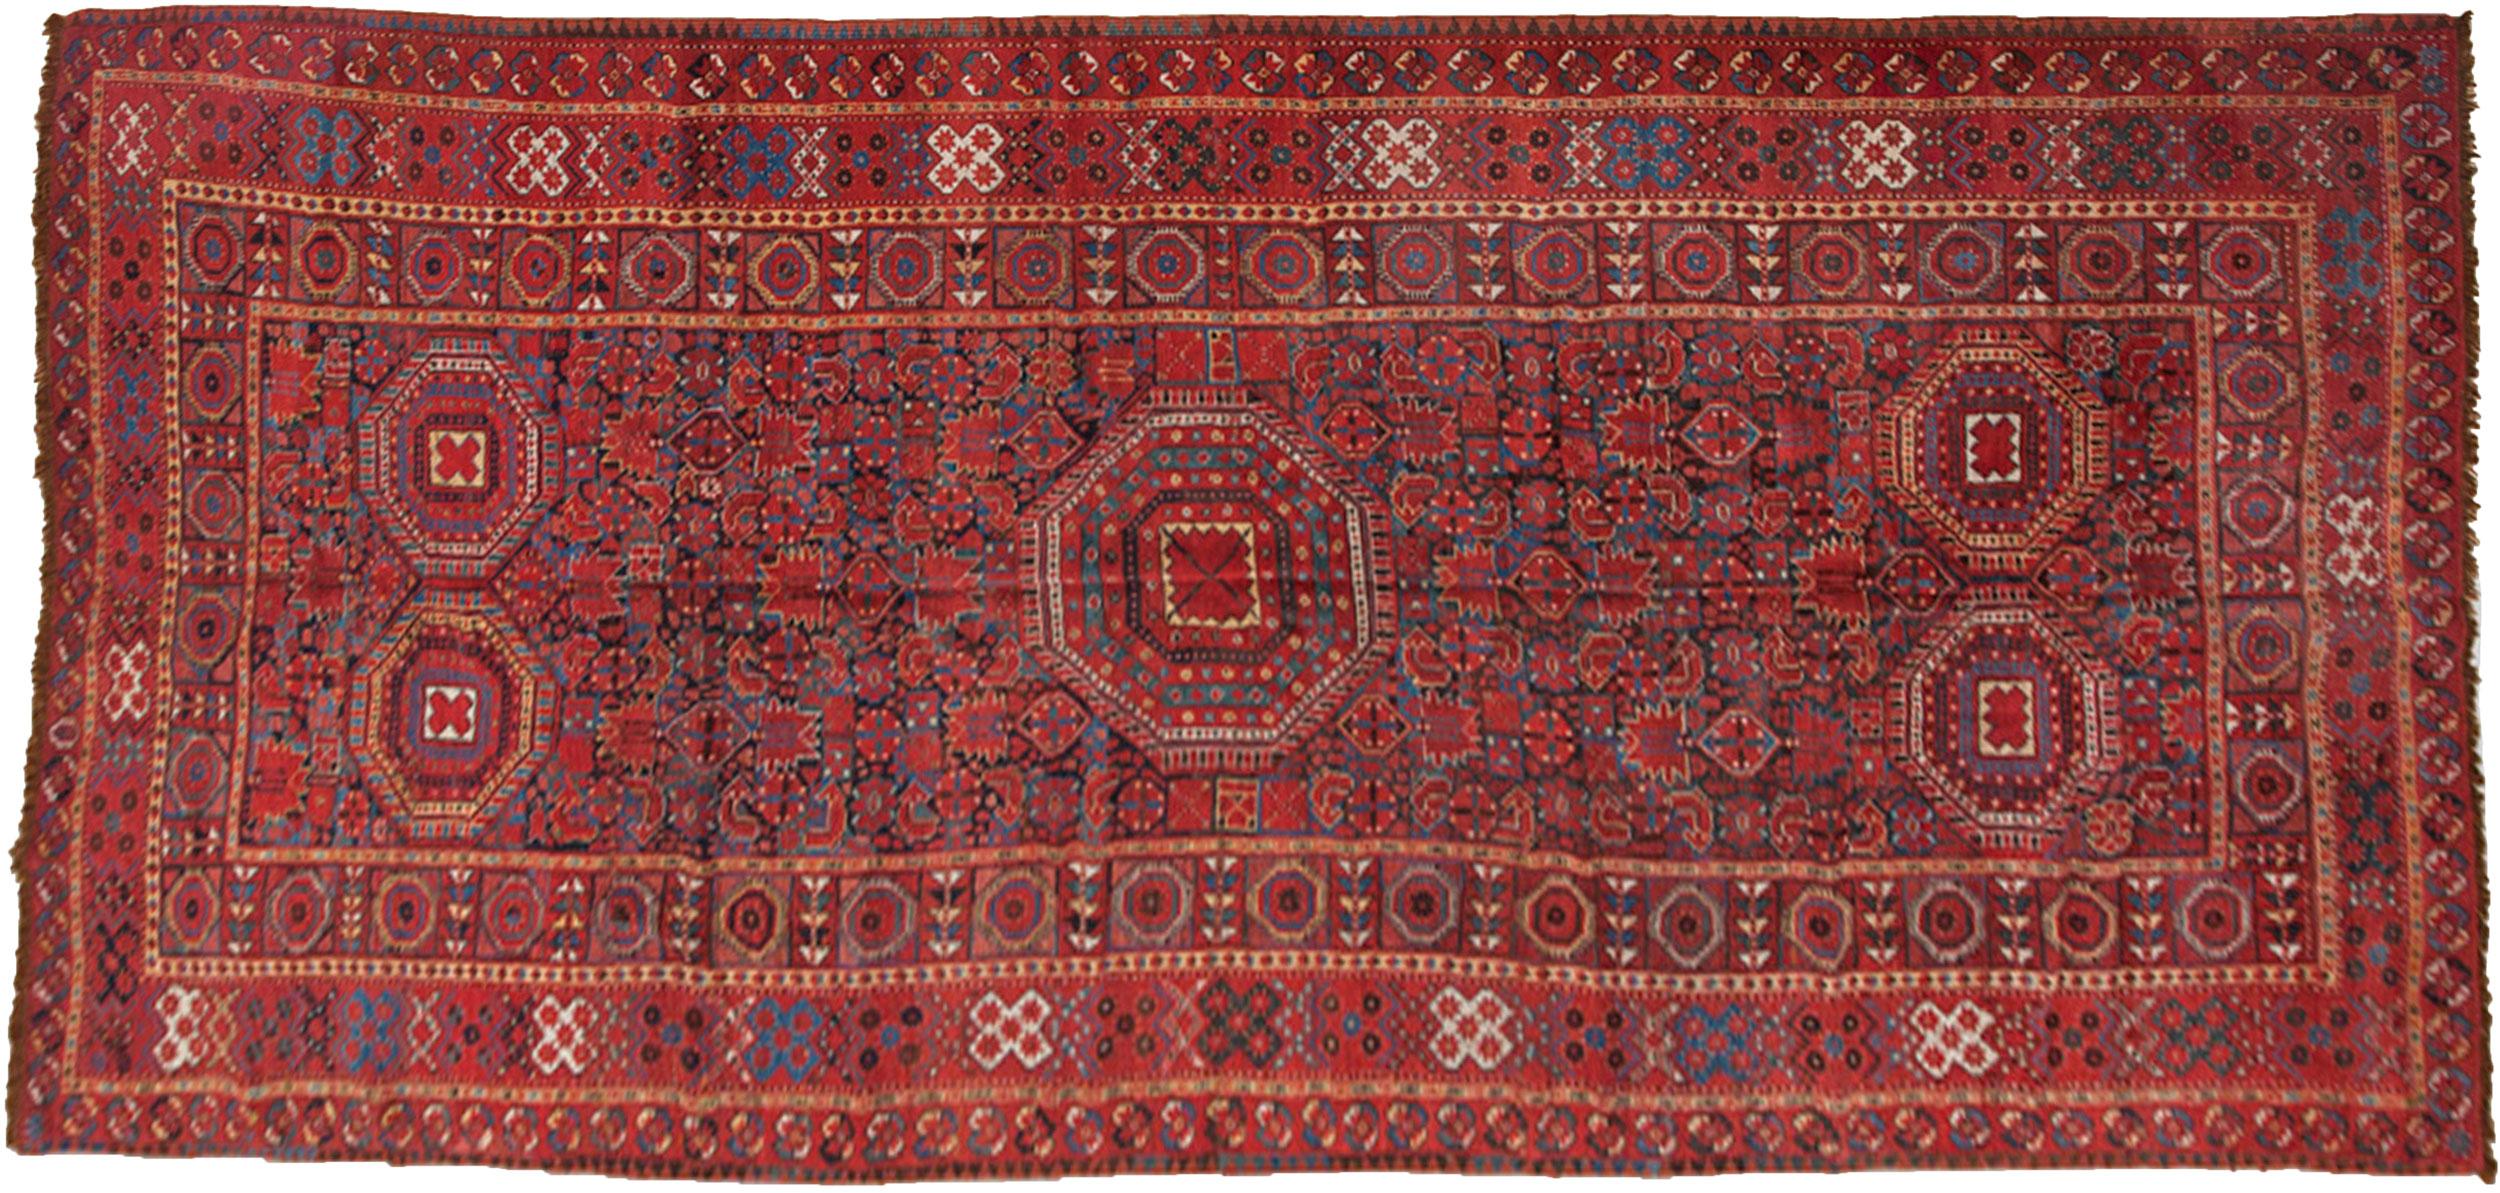 Beeindruckender antiker Beshir-Teppich. Dieser Teppich greift viele Motive auf, die schon seit Generationen im Repertoire der turkmenischen Webornamentik bekannt sind, lehnt sich aber stark an die perisianischen Traditionen des sesshaften